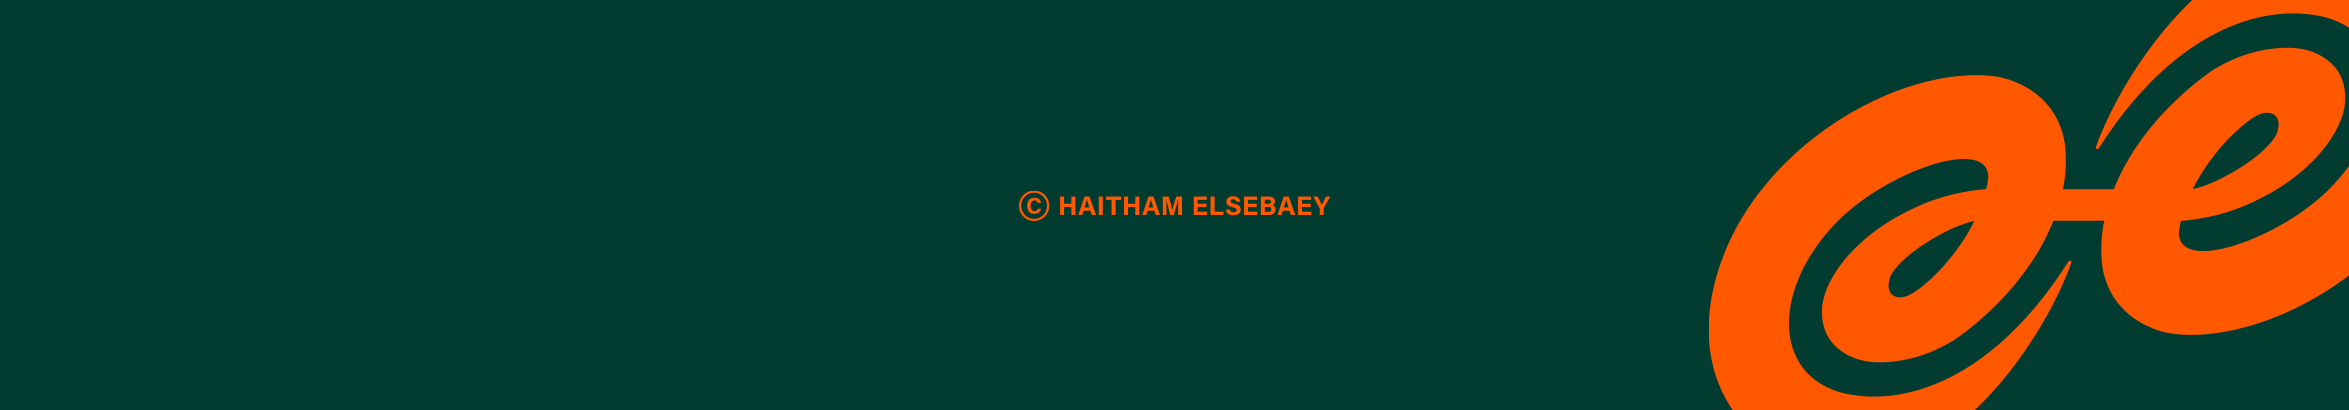 Haitham El Sebaey's profile banner